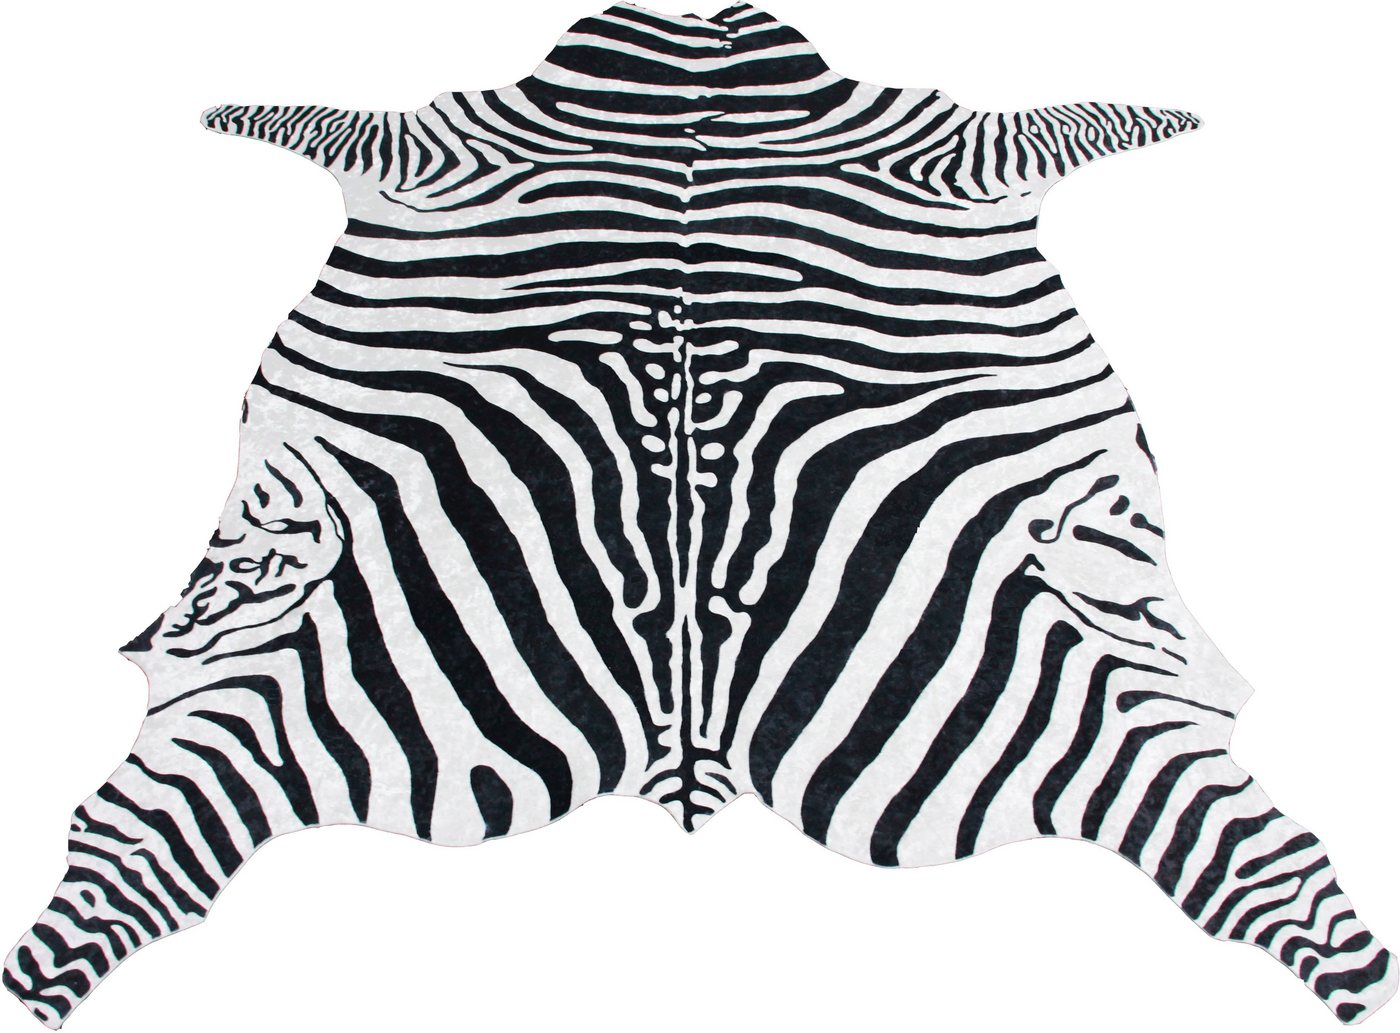 Teppich Zebra, Bruno Banani, tierfellförmig, Höhe: 6 mm, Druckteppich in Fellform, Zebra-Optik, angenehme Haptik von Bruno Banani